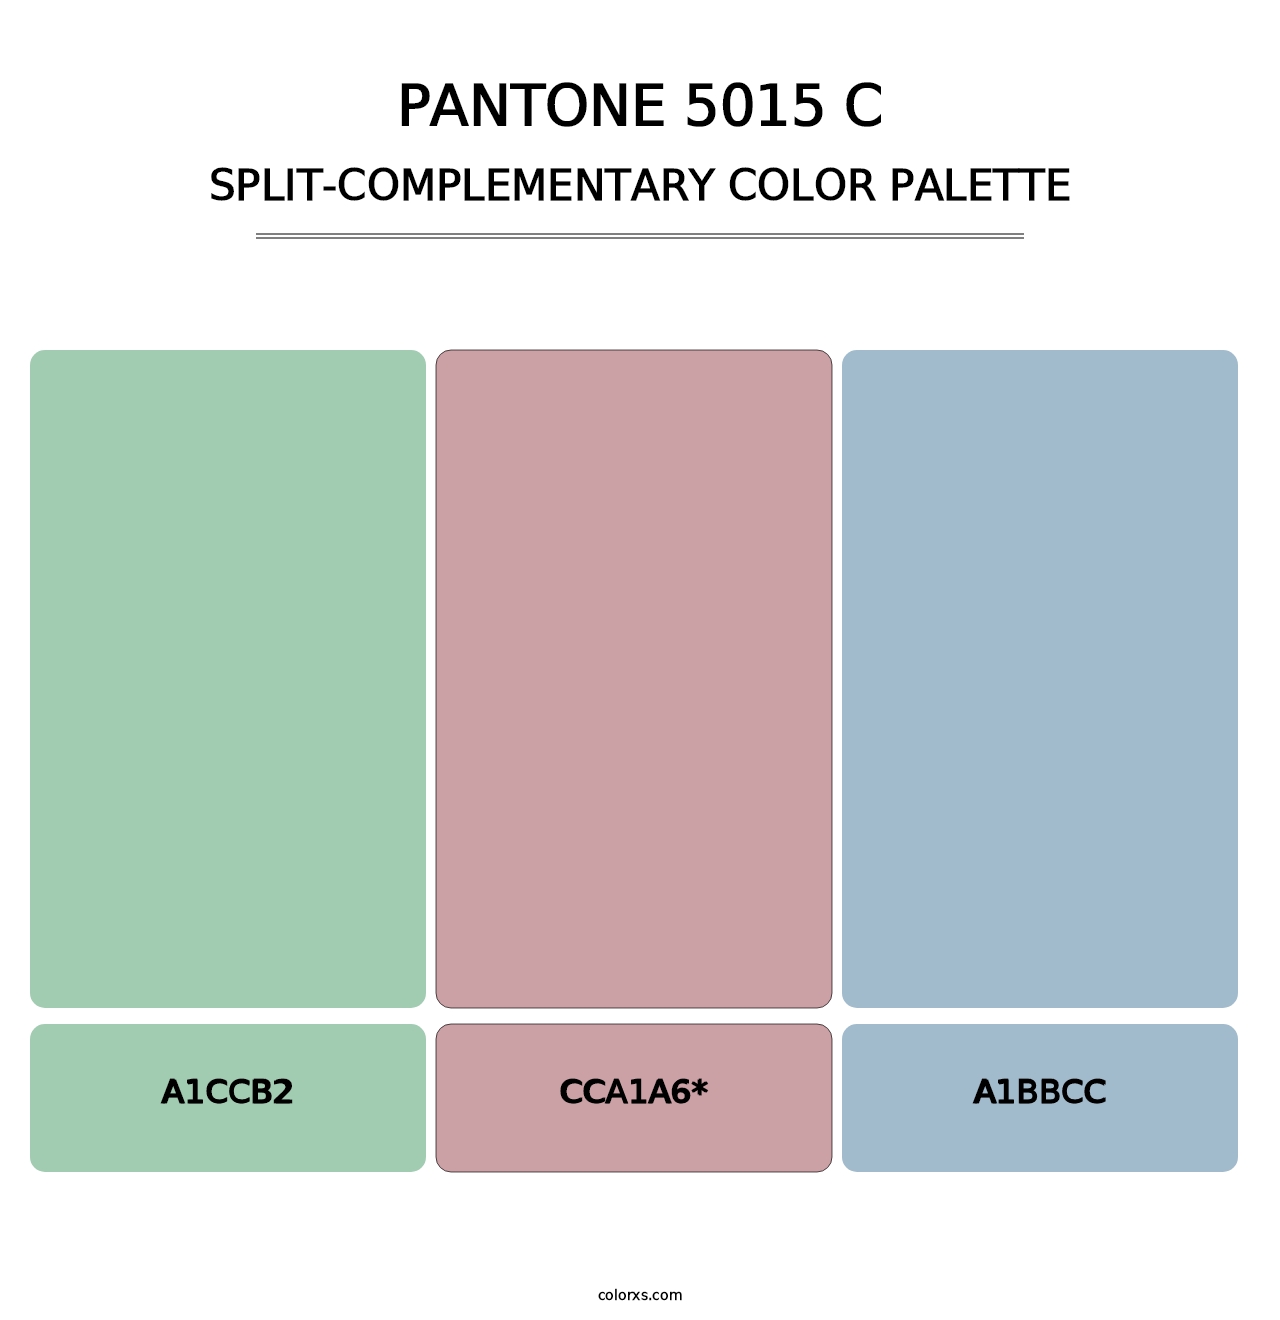 PANTONE 5015 C - Split-Complementary Color Palette